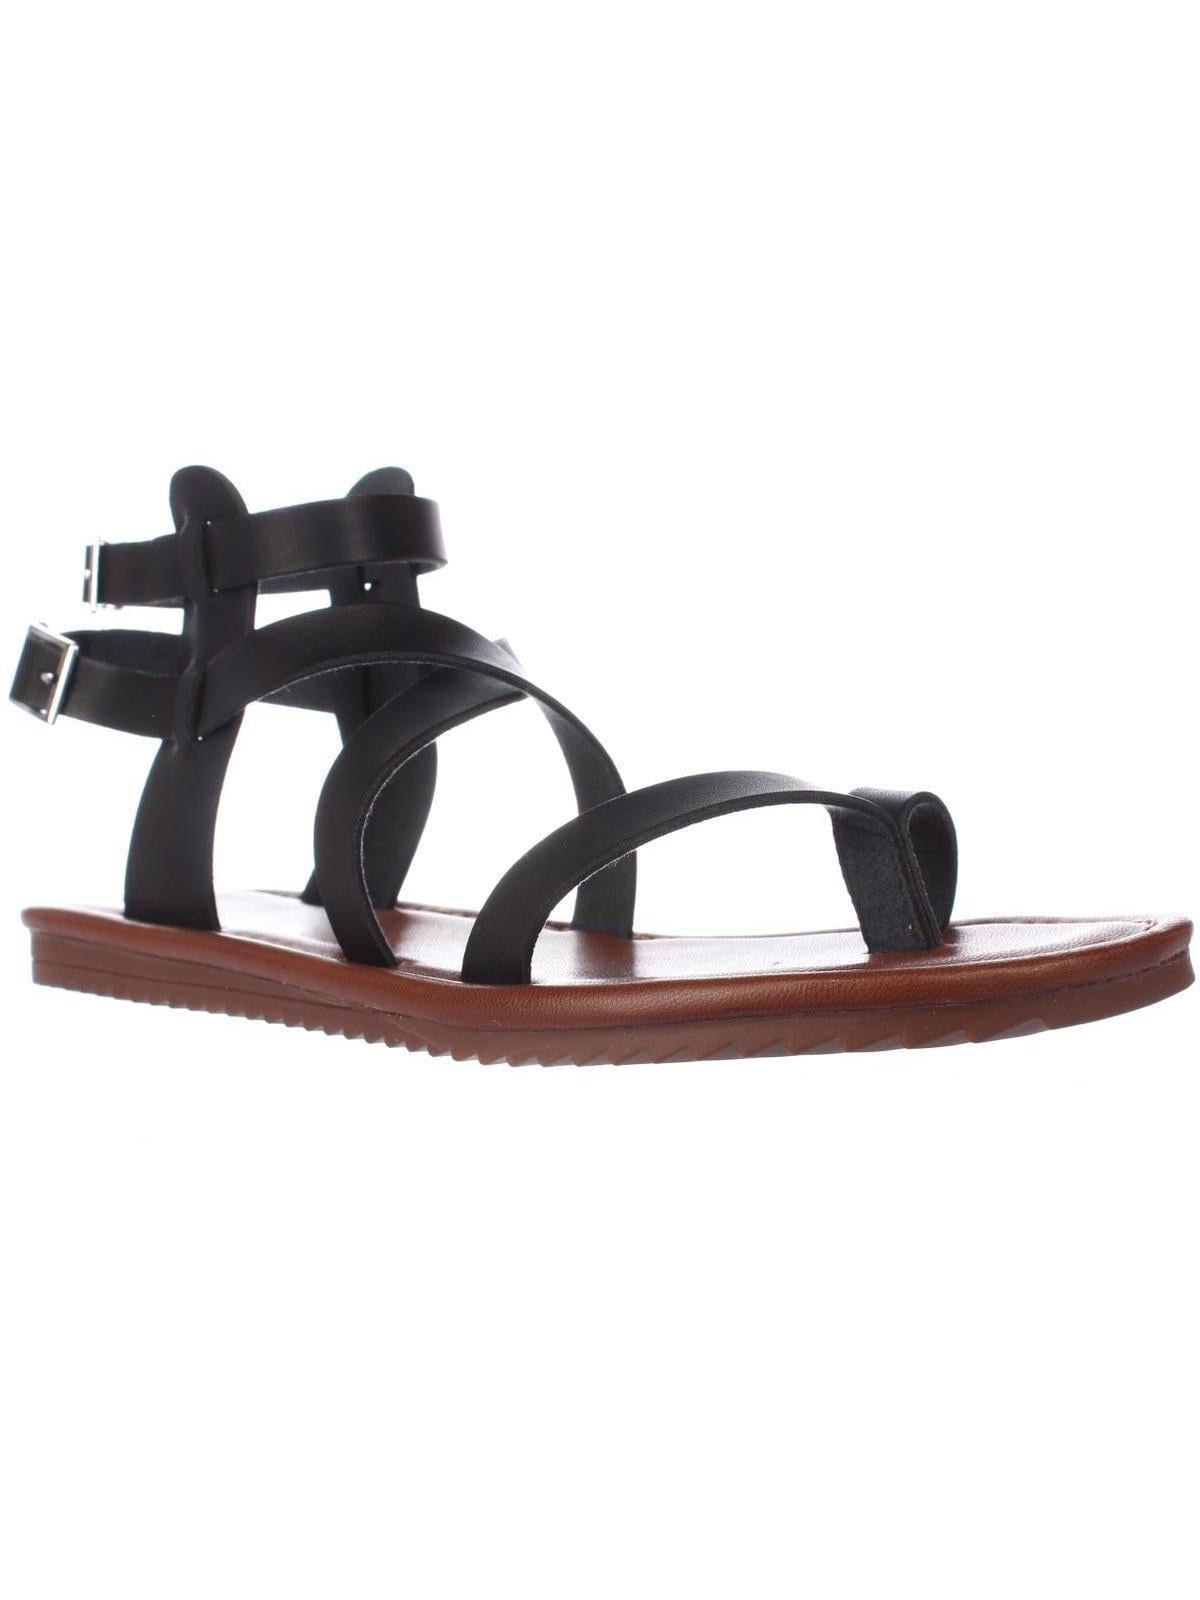 seven dials womens sync split toe casual gladiator sandals - Walmart.com